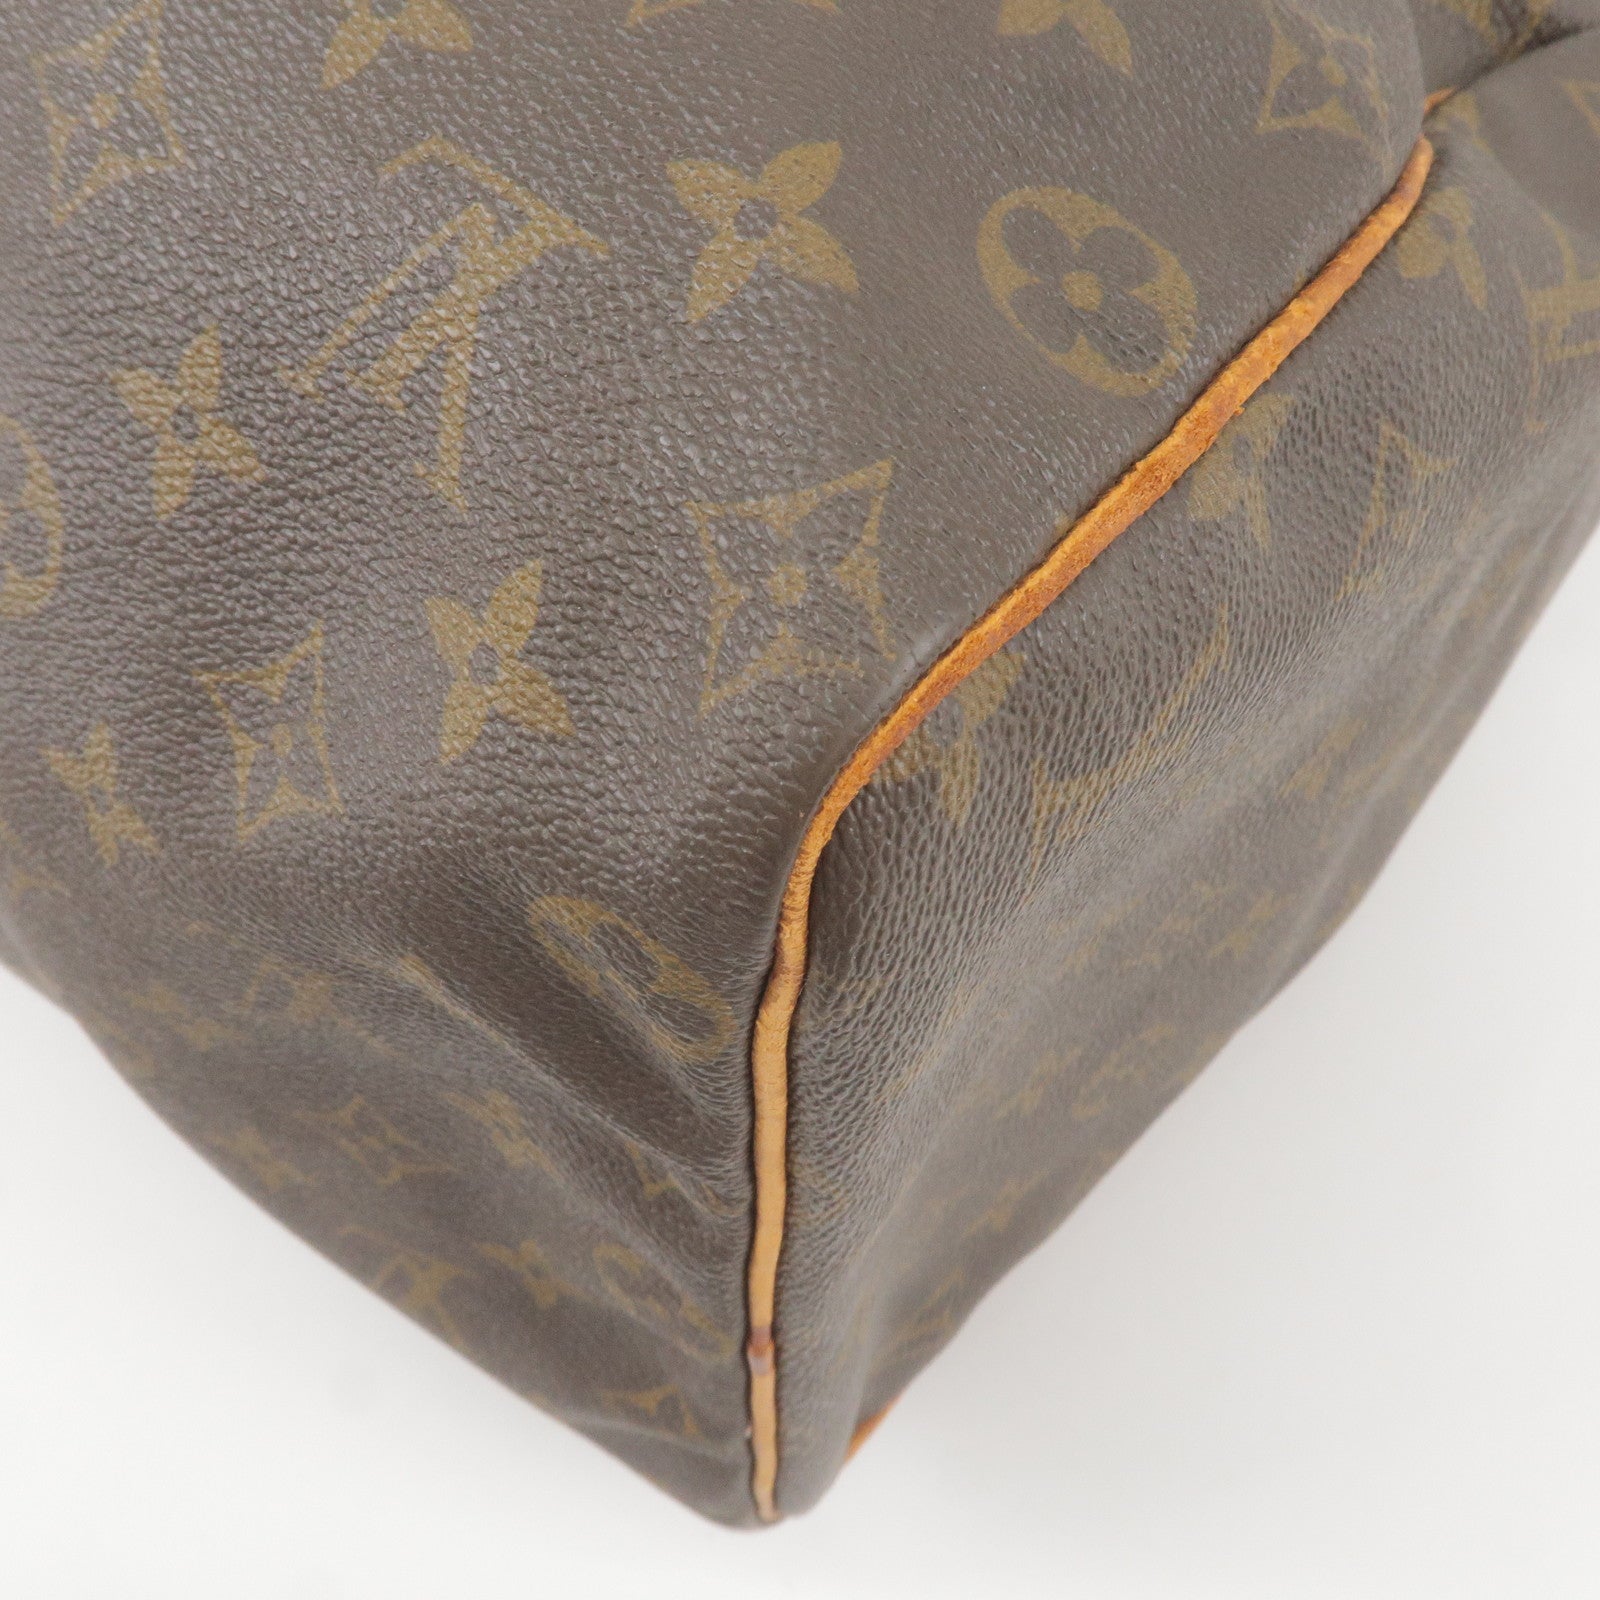 Satchel  Louis vuitton messenger bag, Leather and lace, Satchel